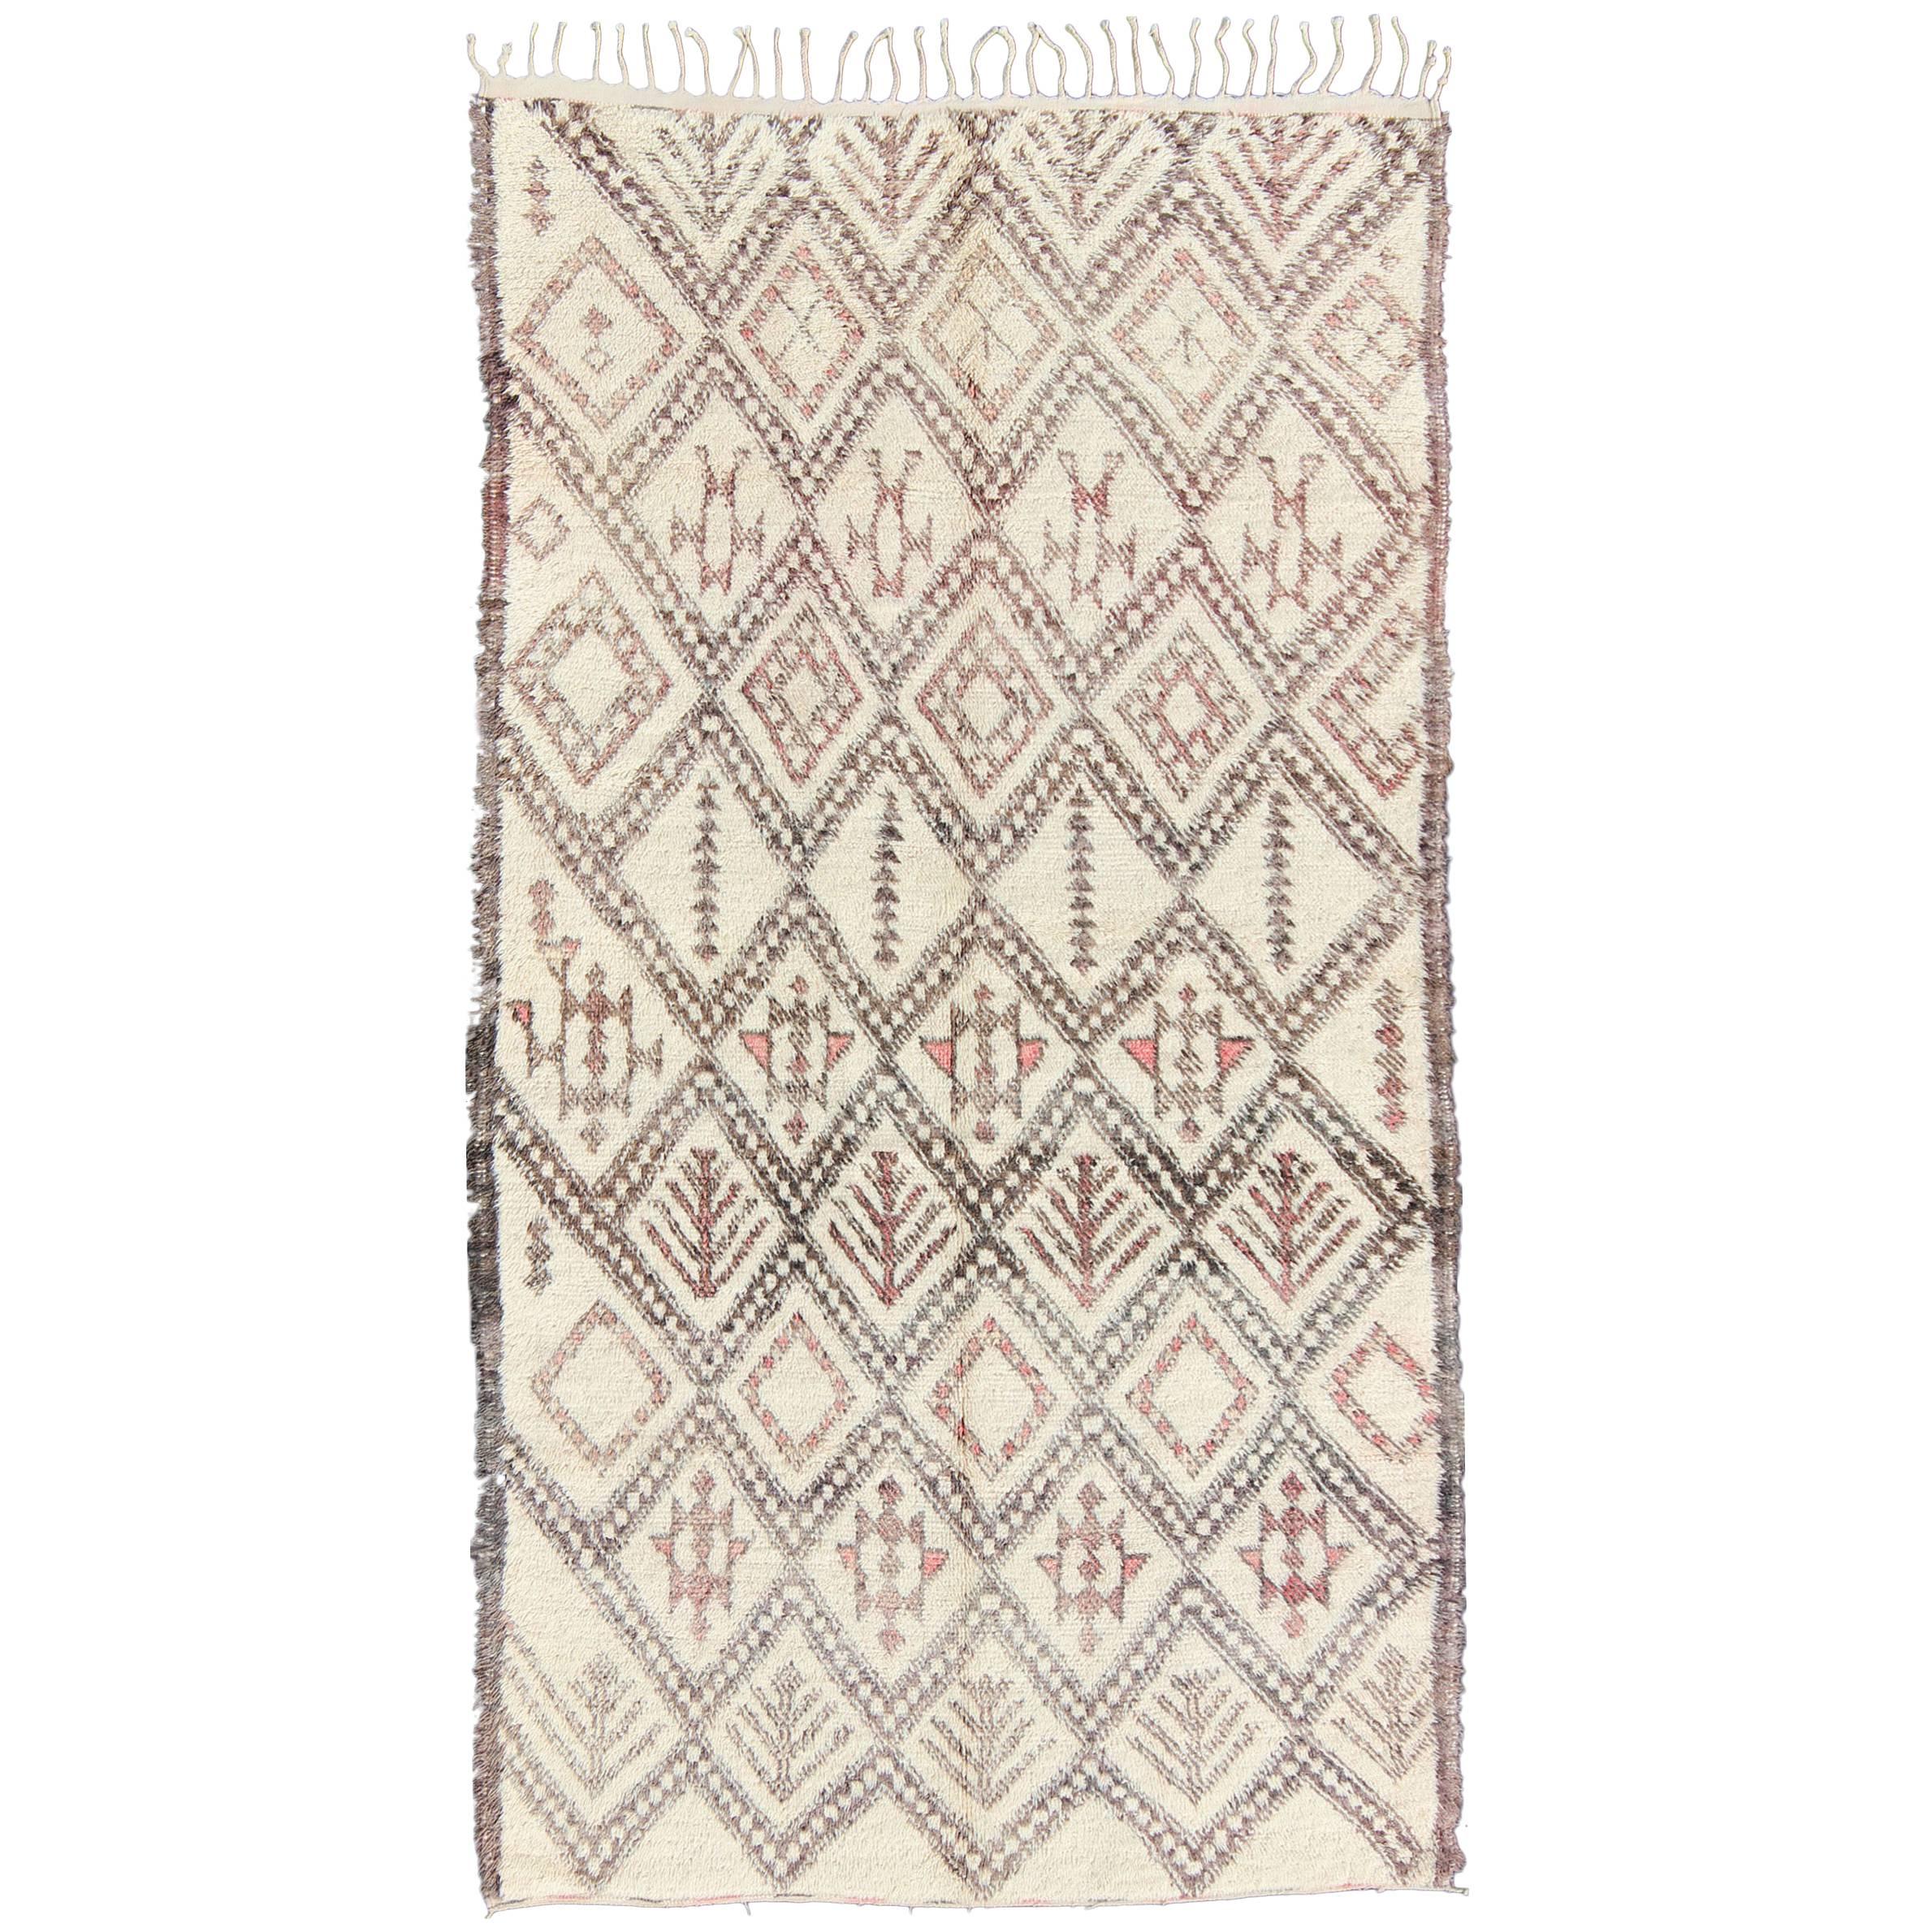 Grand tapis marocain Beni Ouarain à motif de diamants en ivoire clair, gris et rose